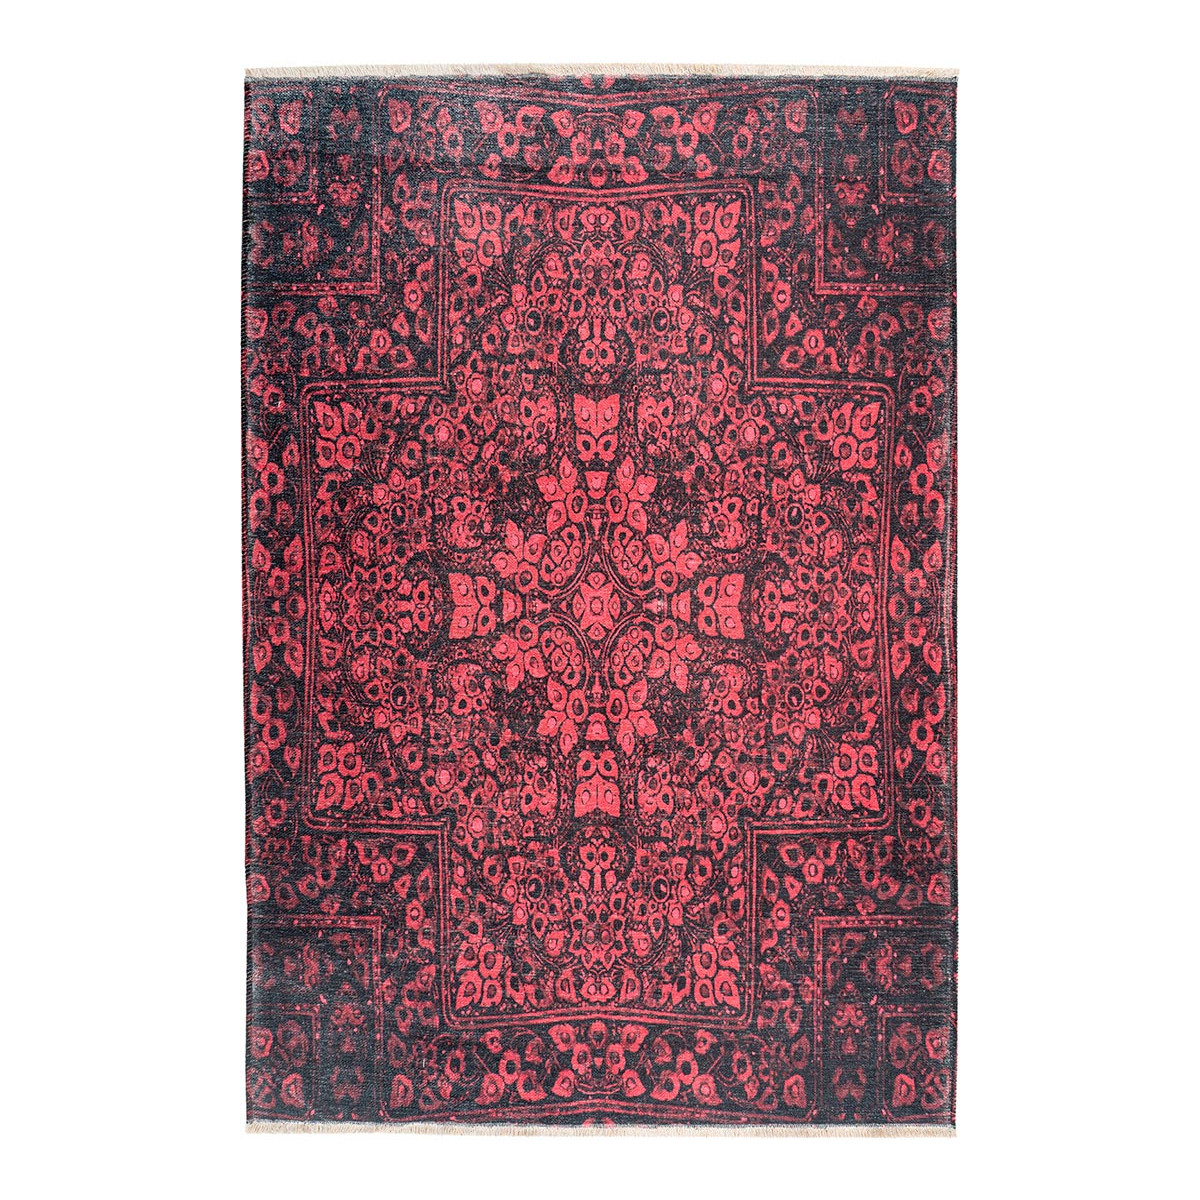 Tapis ethnique en polyester rubis 200x290